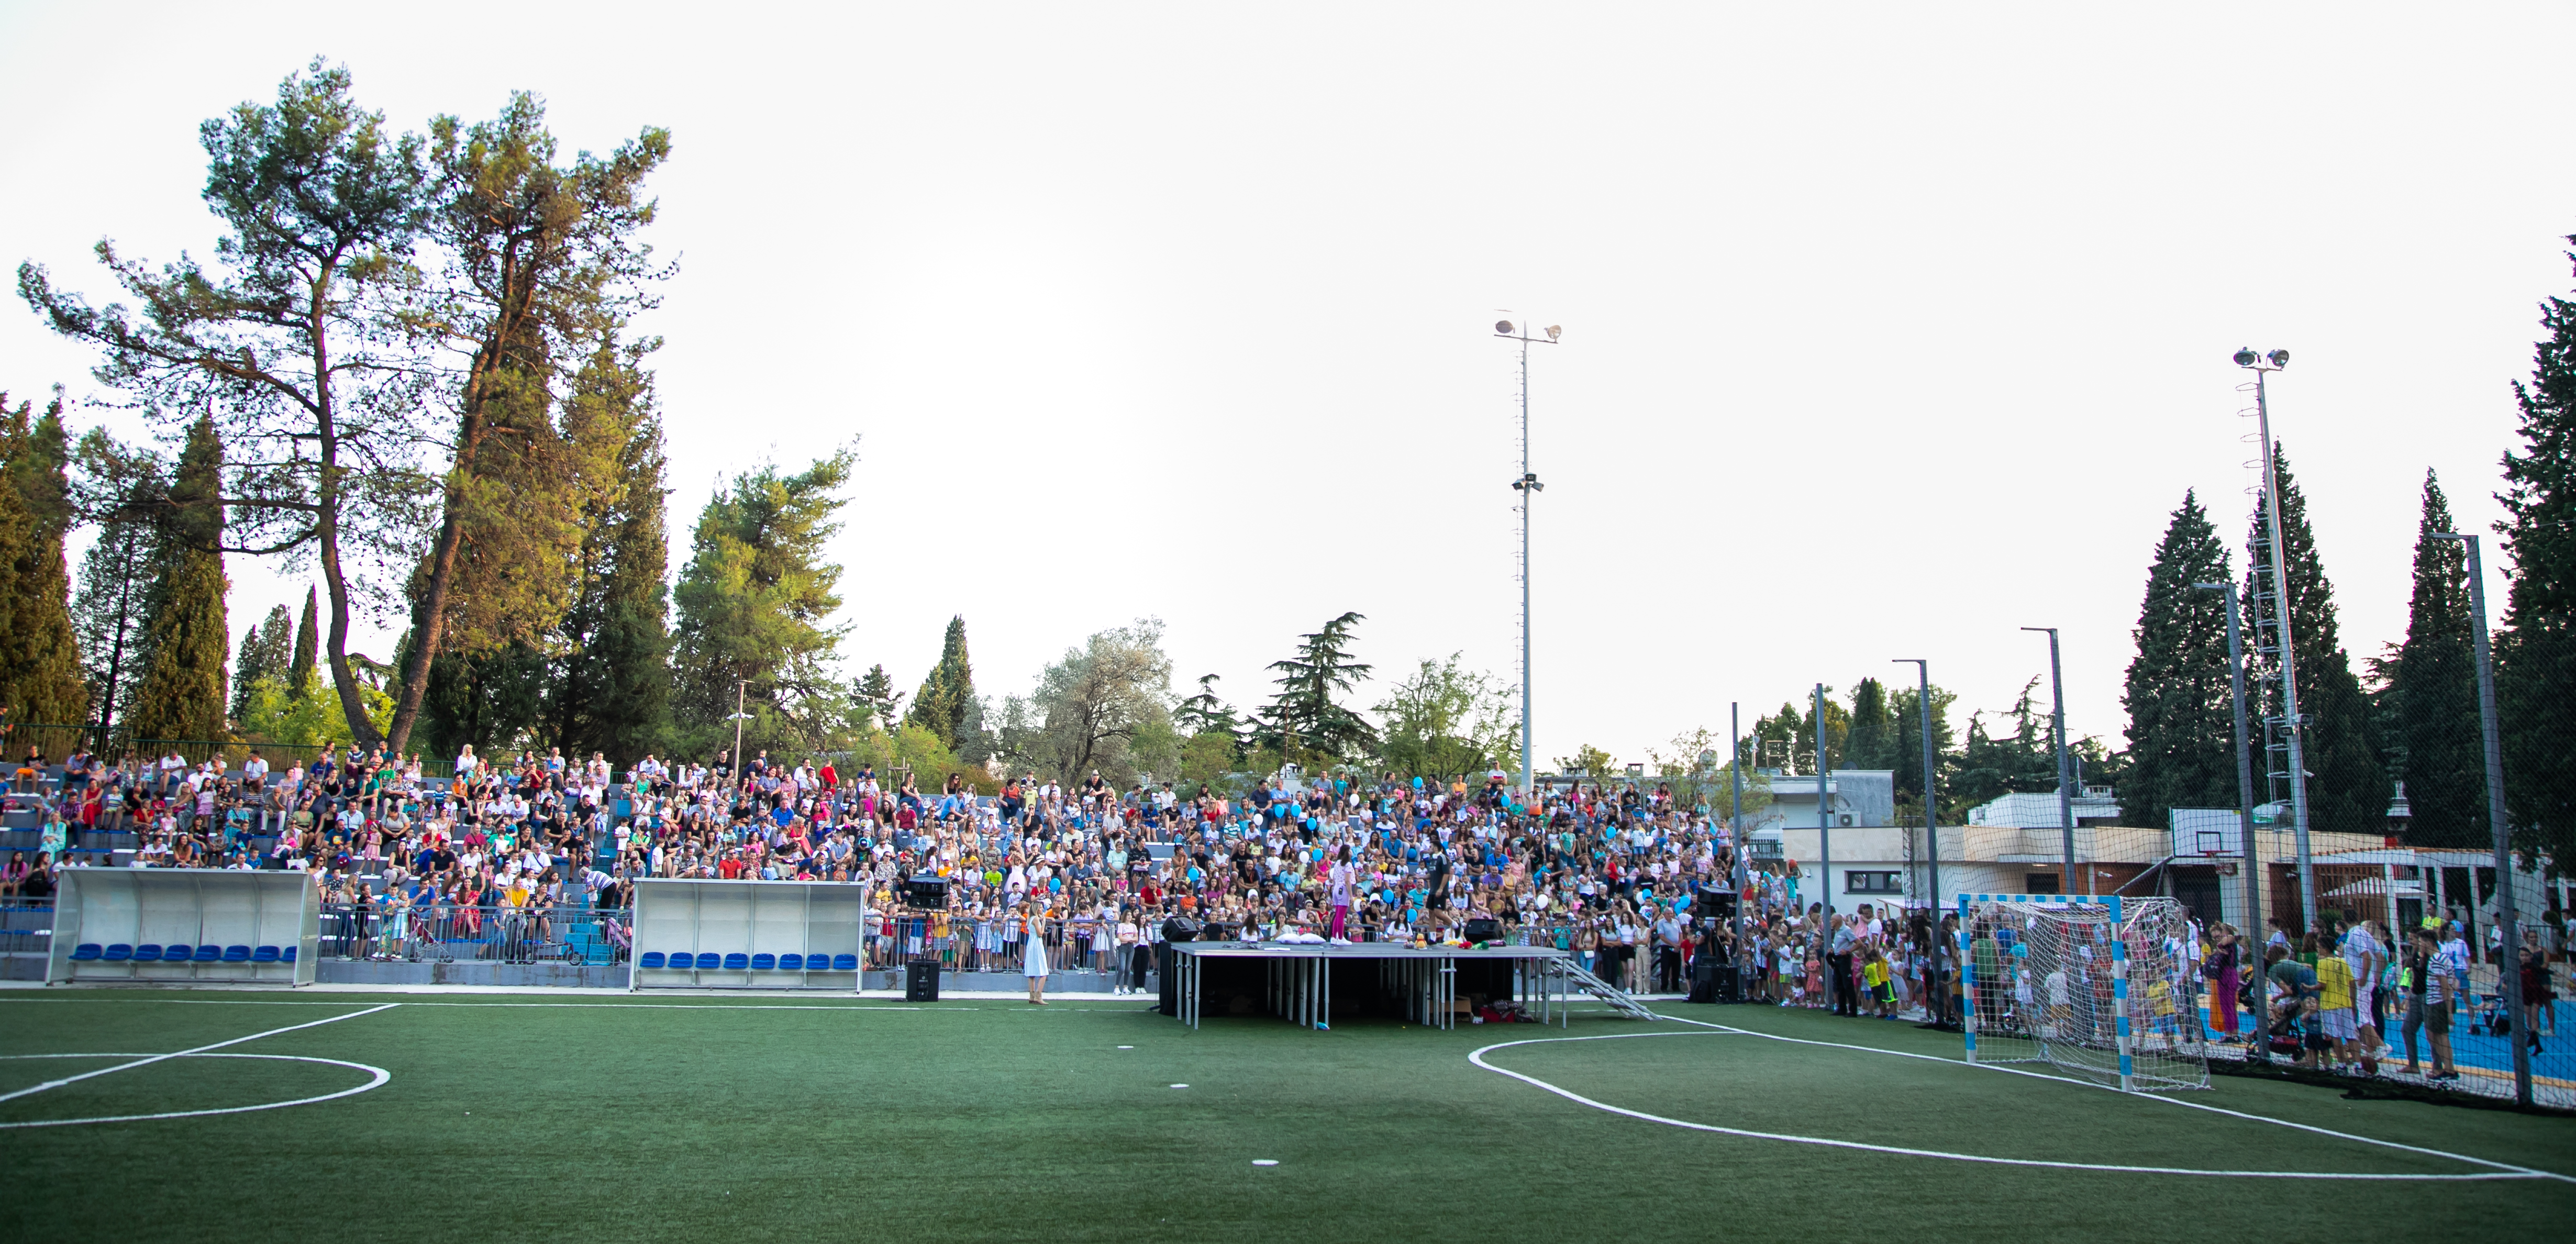 Na rekonstruisanom Stadionu malih sportova oživjeli još jednu tradiciju; Vuković poželio sreću i uspjeh školarcima